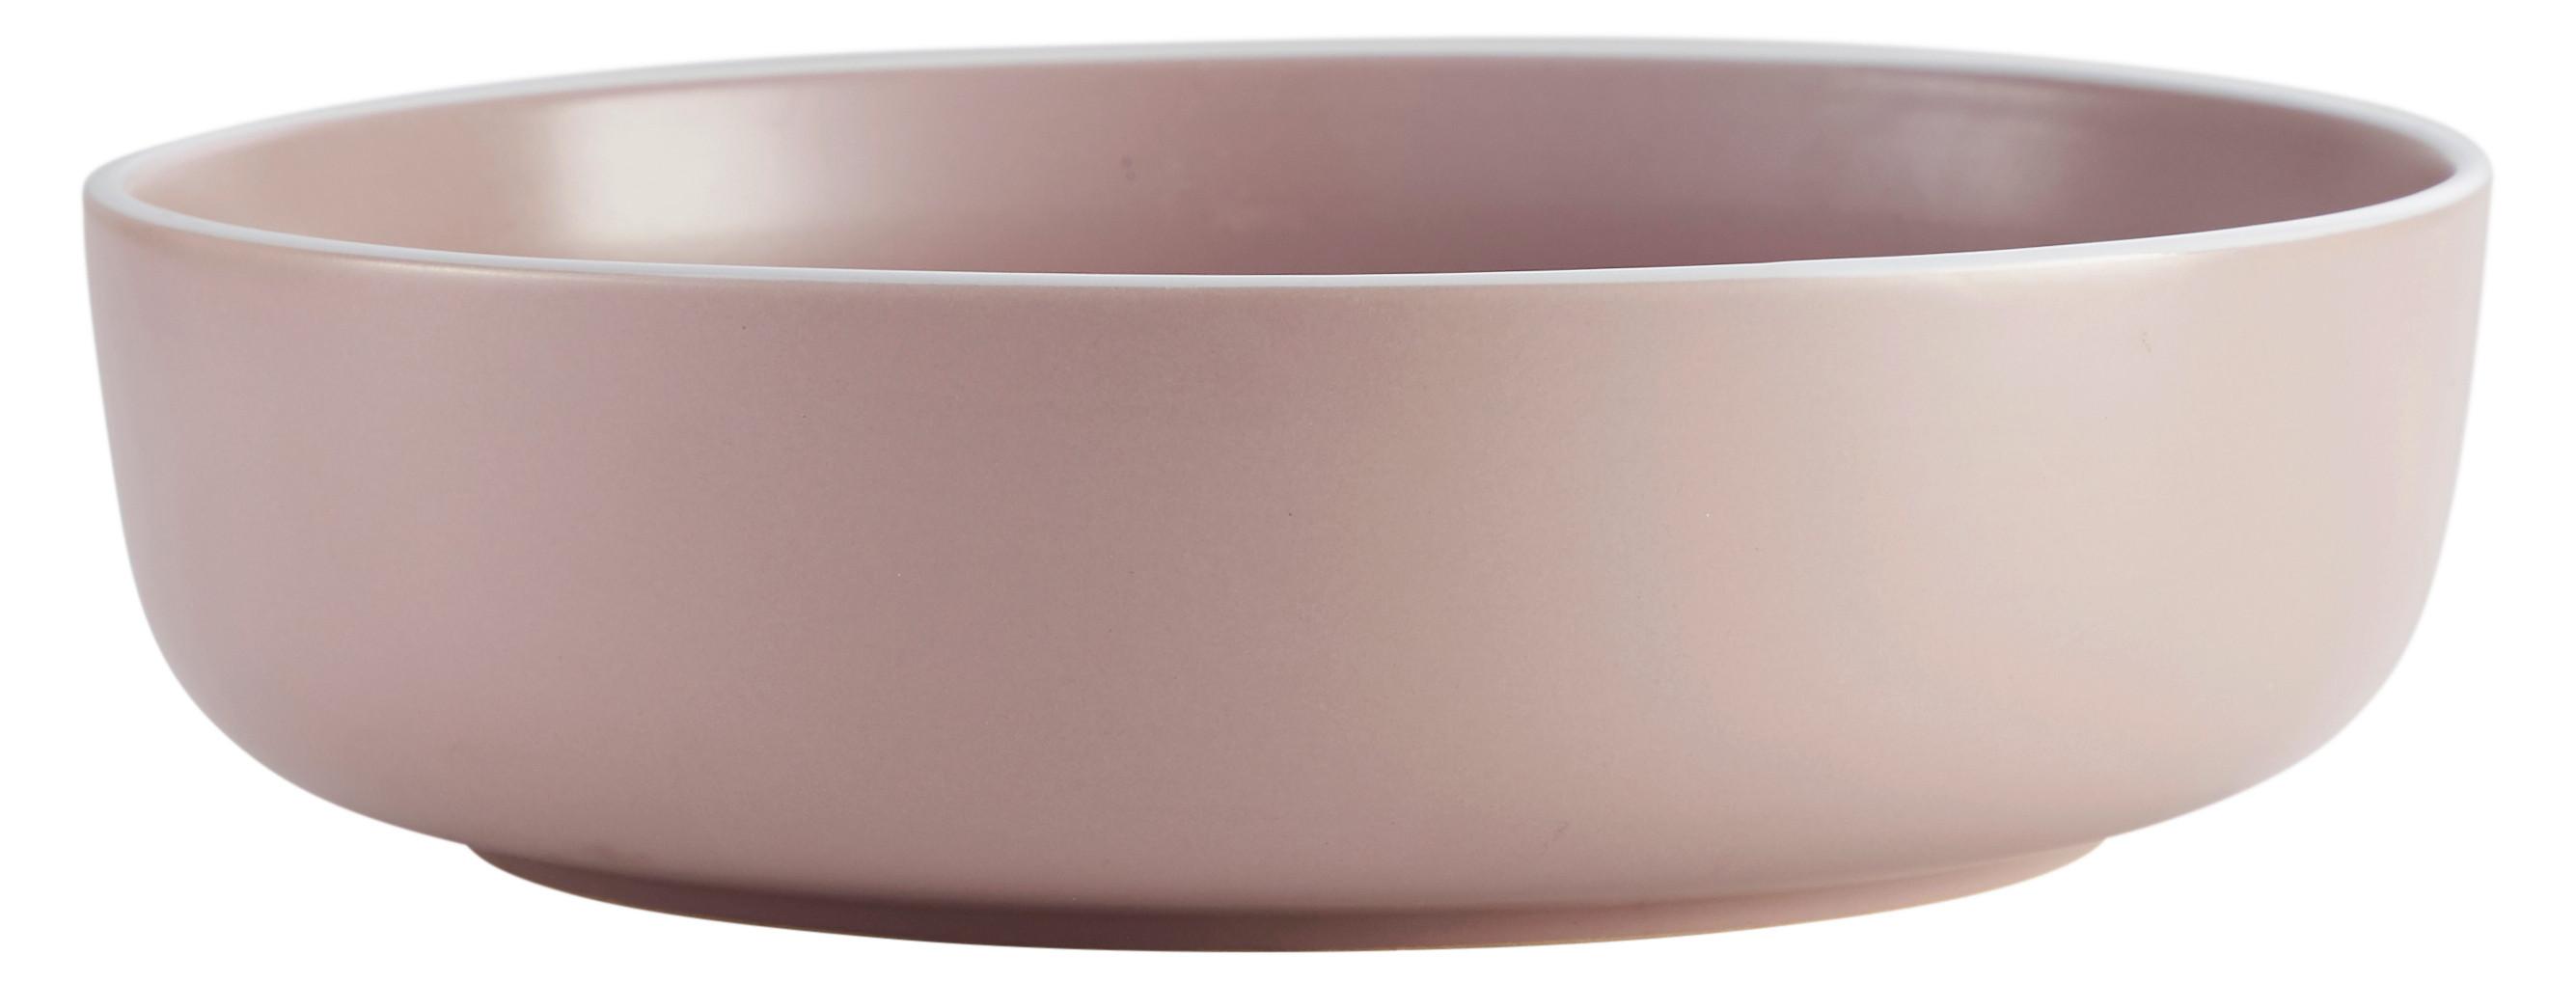 Salátová Mísa Ragnar - růžová, Moderní, keramika (26cm) - Modern Living